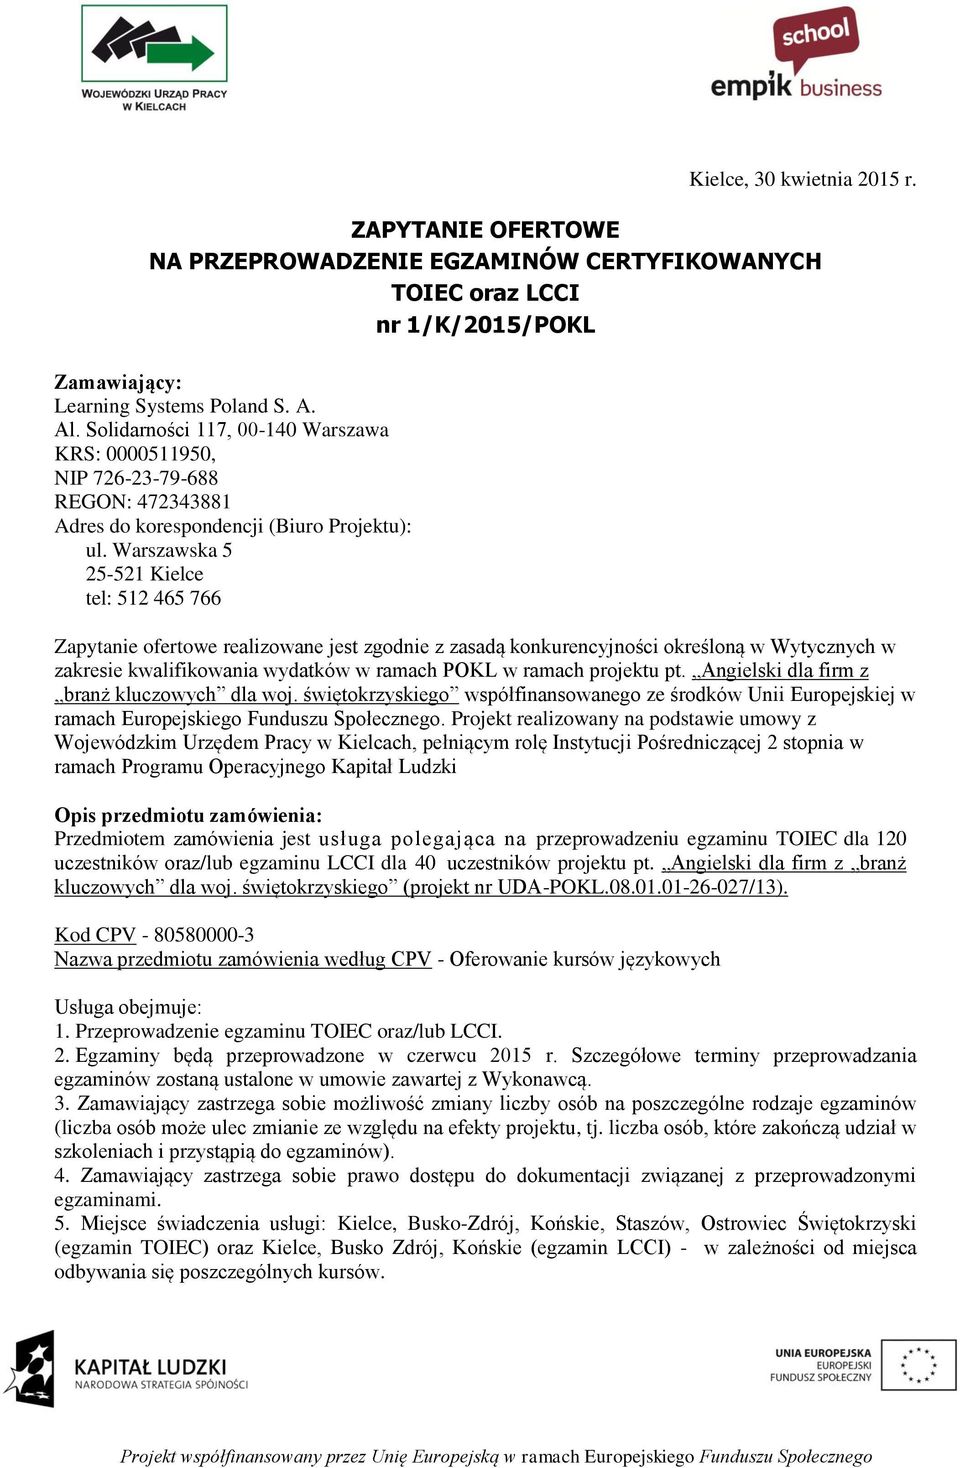 Warszawska 5 25-521 Kielce tel: 512 465 766 Zapytanie ofertowe realizowane jest zgodnie z zasadą konkurencyjności określoną w Wytycznych w zakresie kwalifikowania wydatków w ramach POKL w ramach